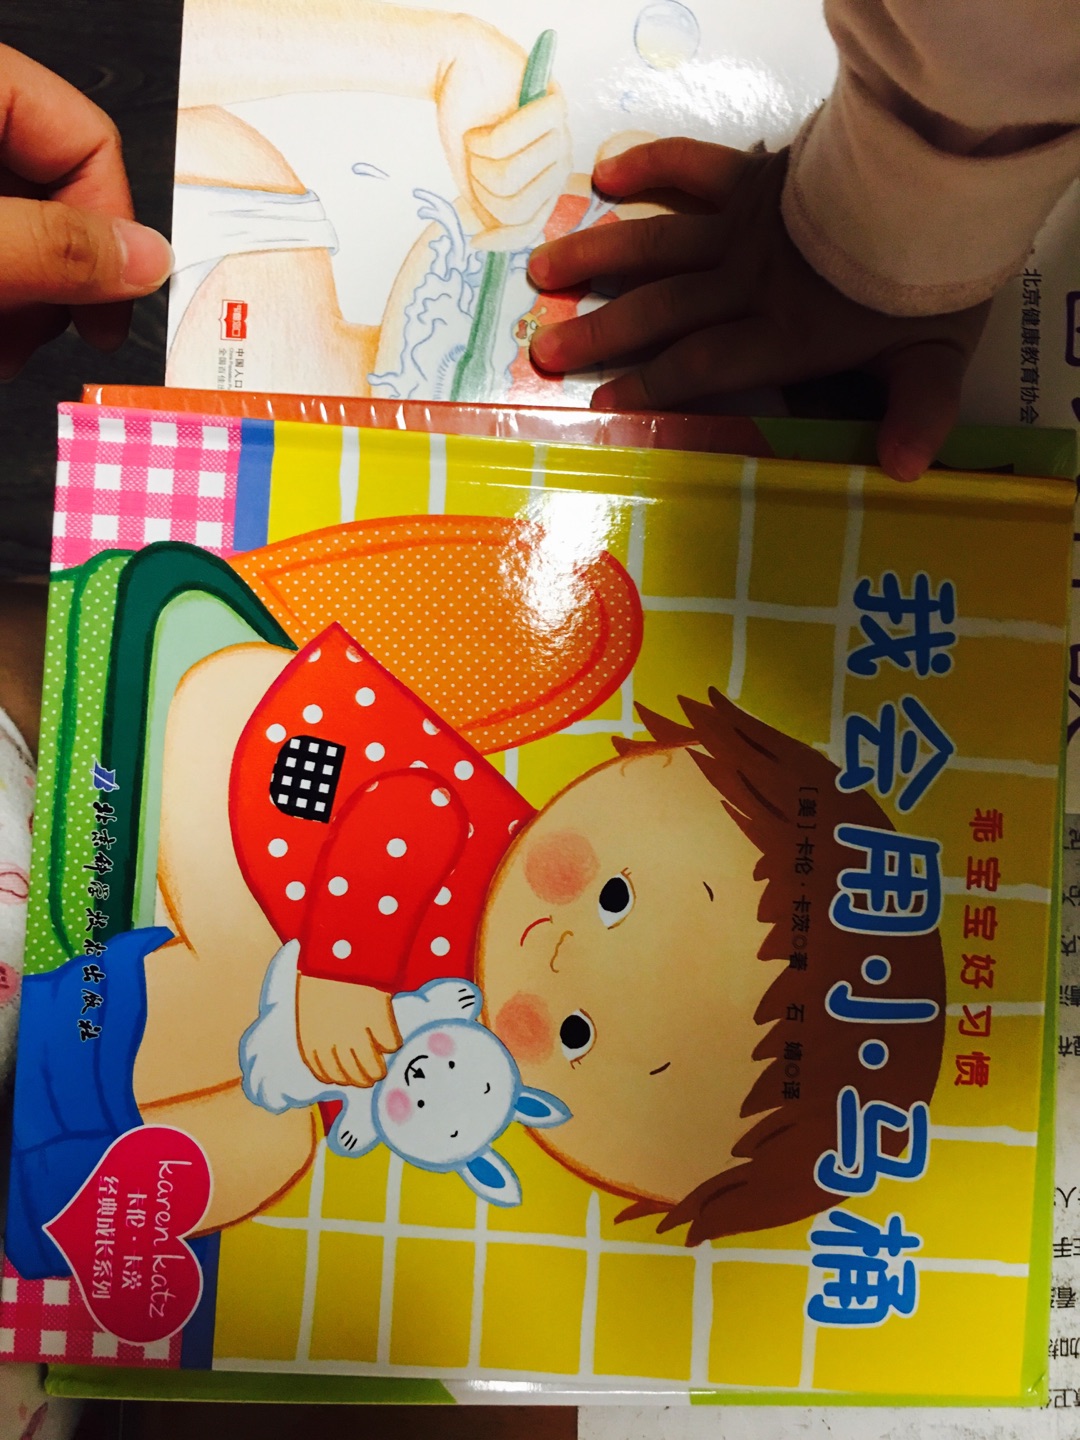 这次买了几本关于宝宝习惯引导的绘本 一直喜欢在购买绘本 价格合理到货快 绘本宝宝很喜欢 希望能对养成好的刷牙上厕所习惯有帮助